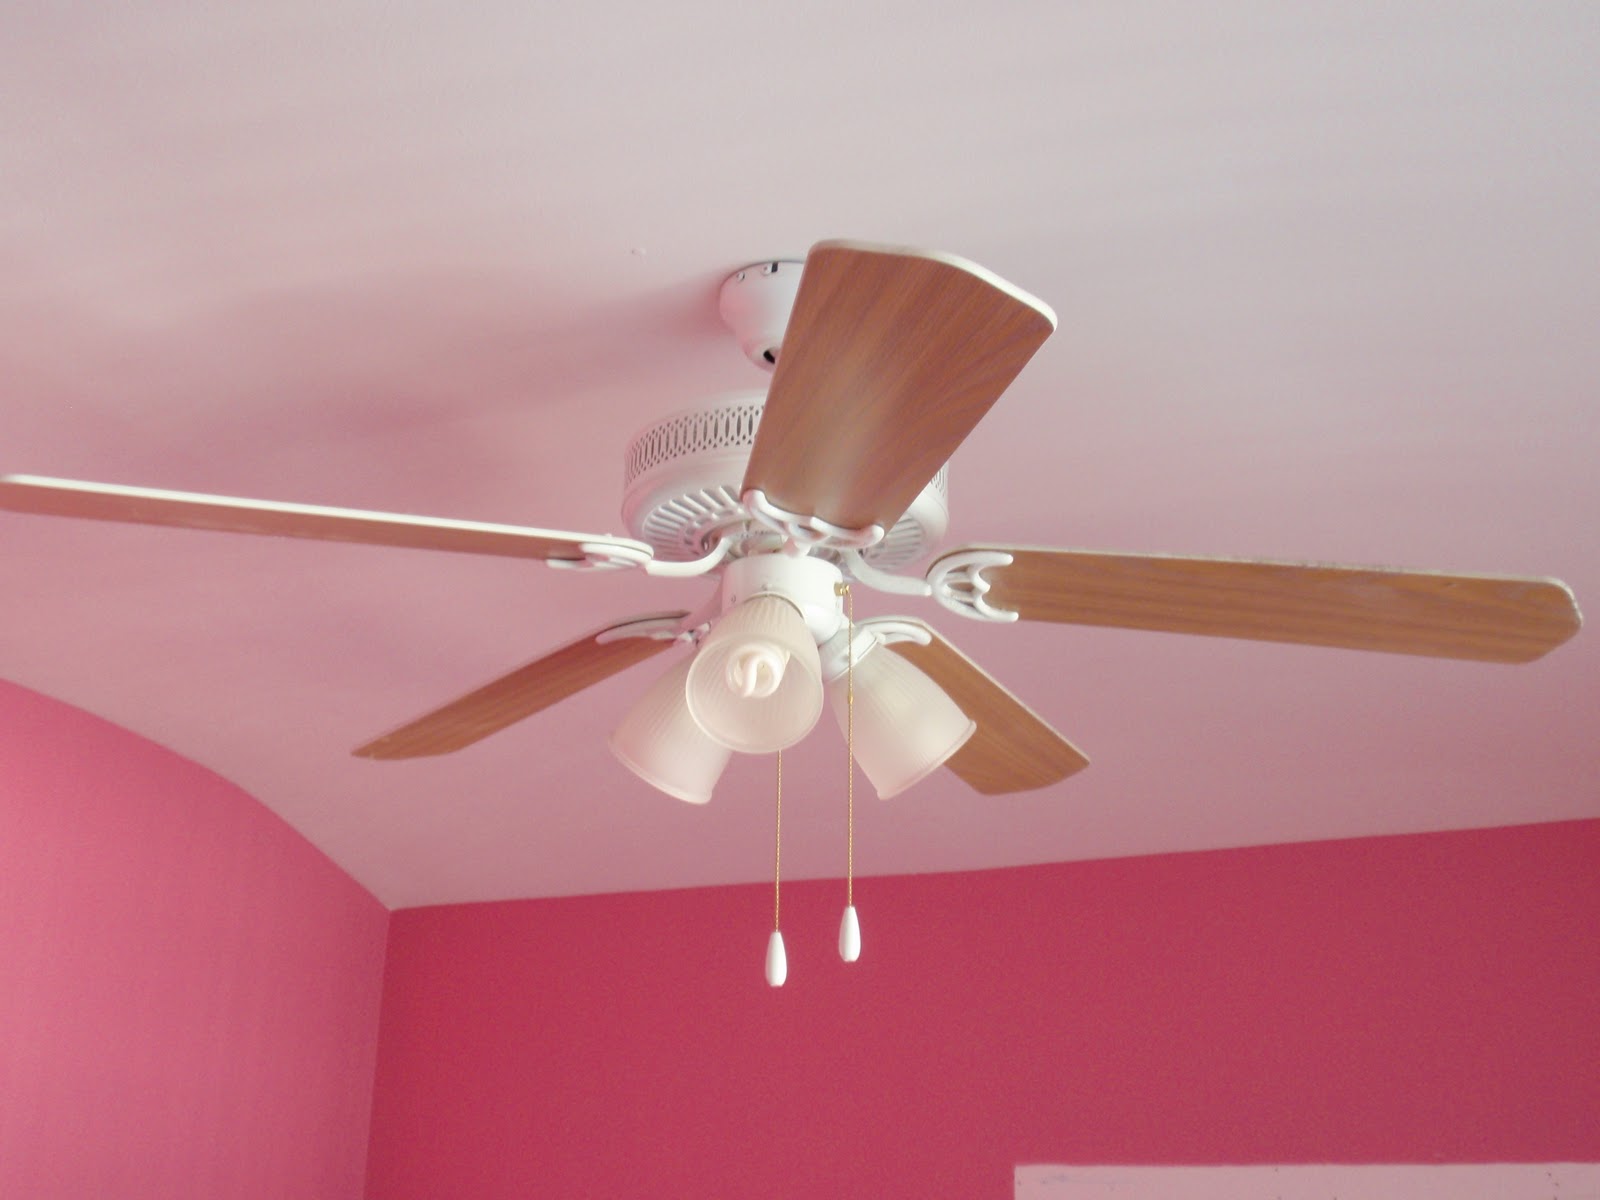 The ceiling fan in Lexi